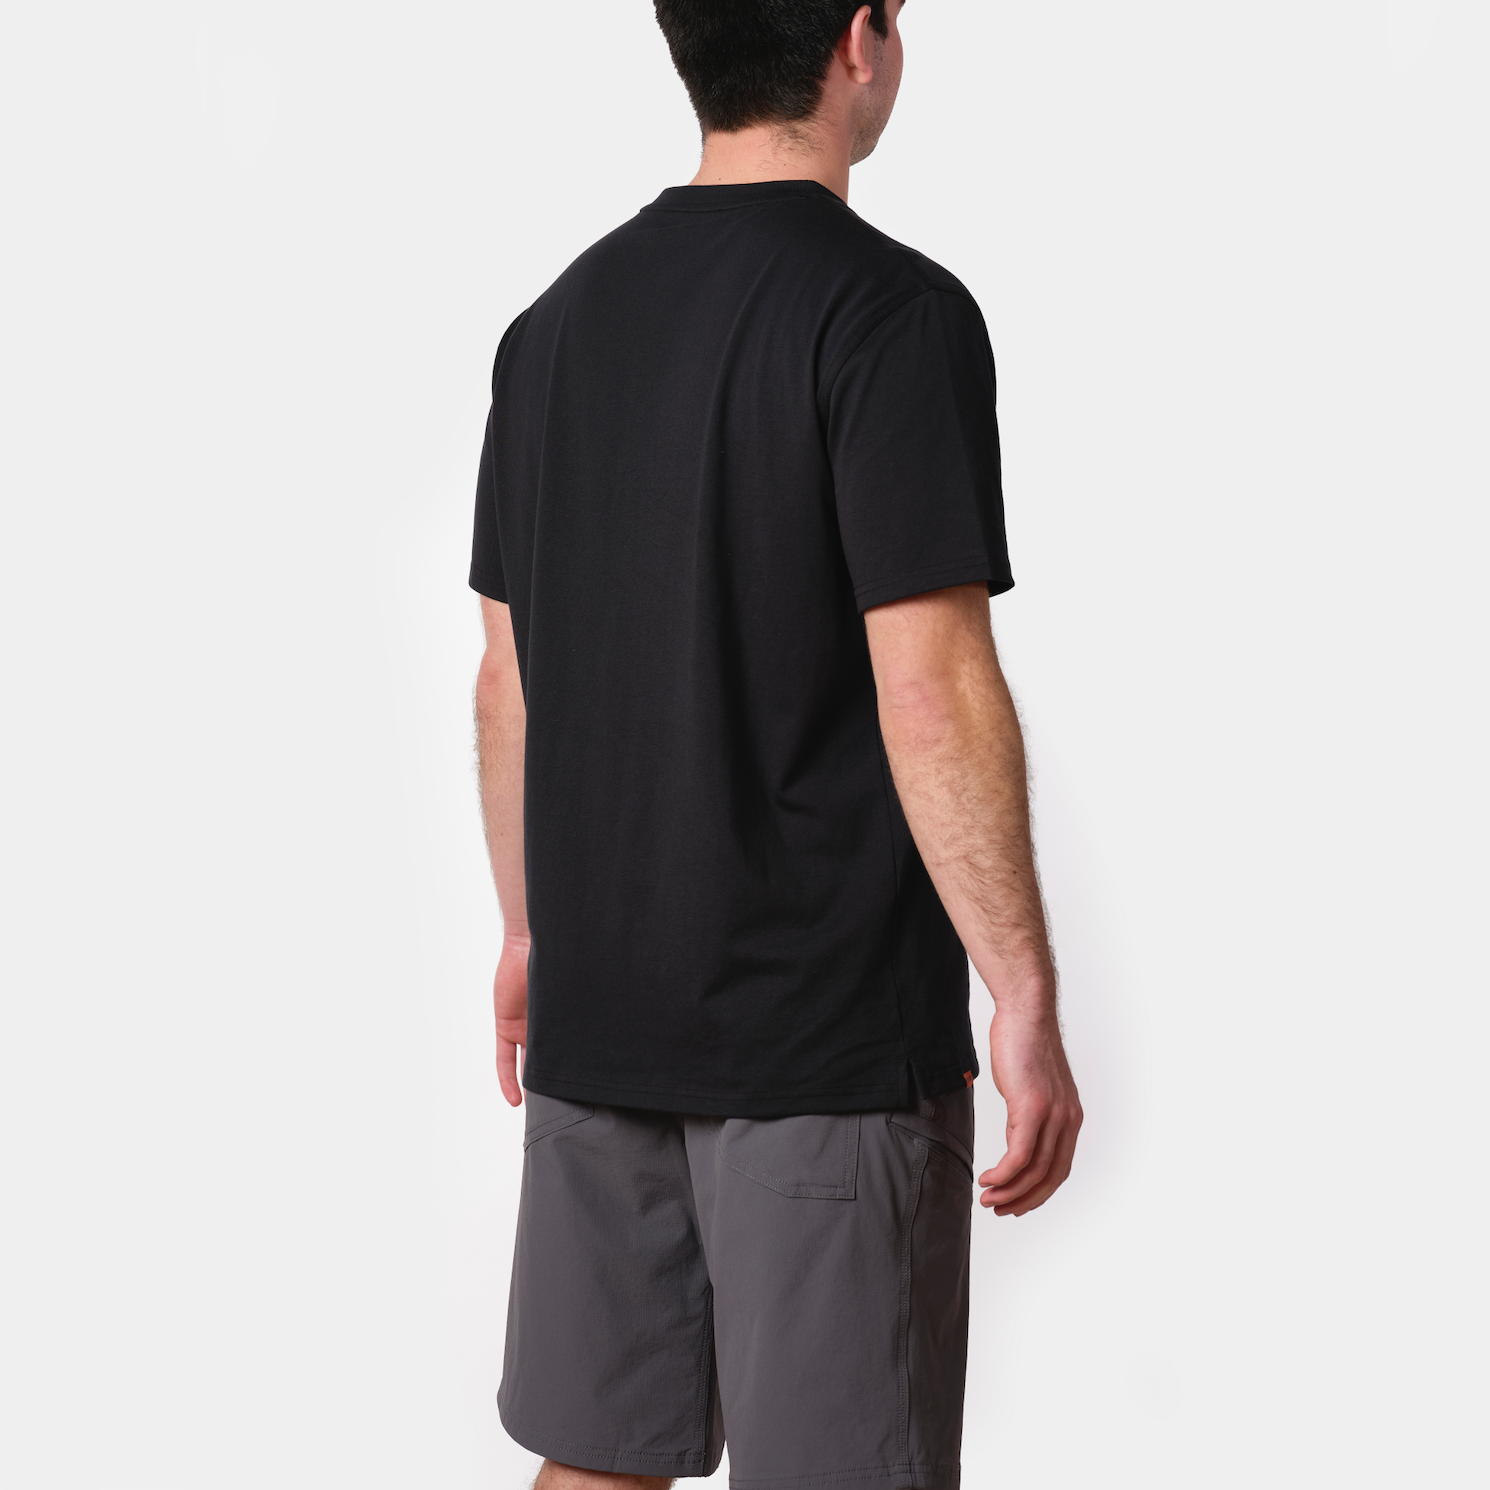 BRUNT Pocket T-Shirt | BRUNT Workwear